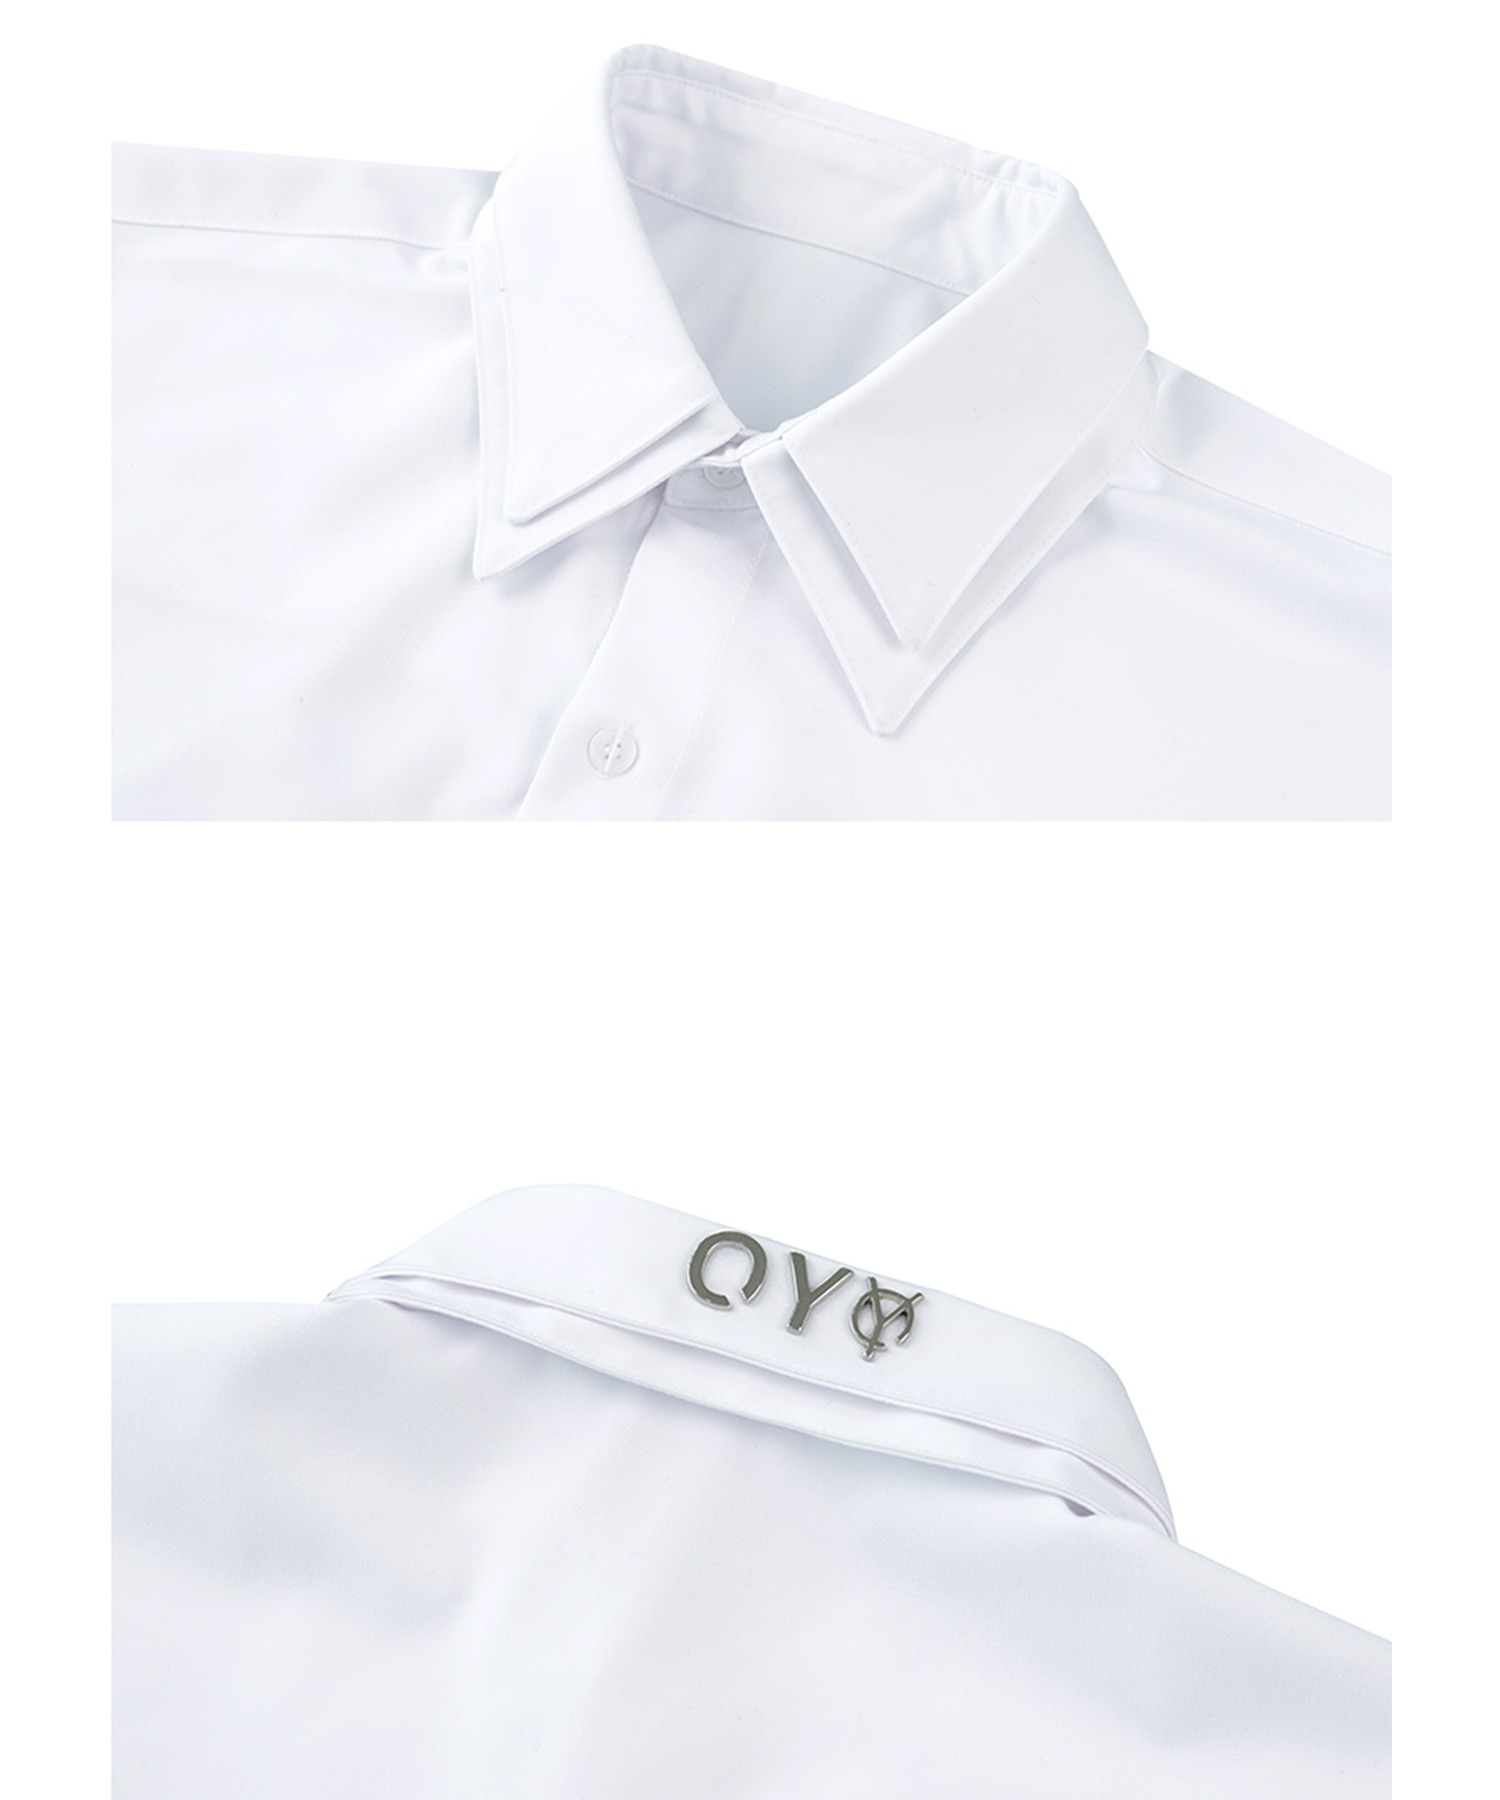 OY/オーワイ』DOUBLE COLLAR HALF SHIRTS/ダブルカラー半袖シャツ OY 